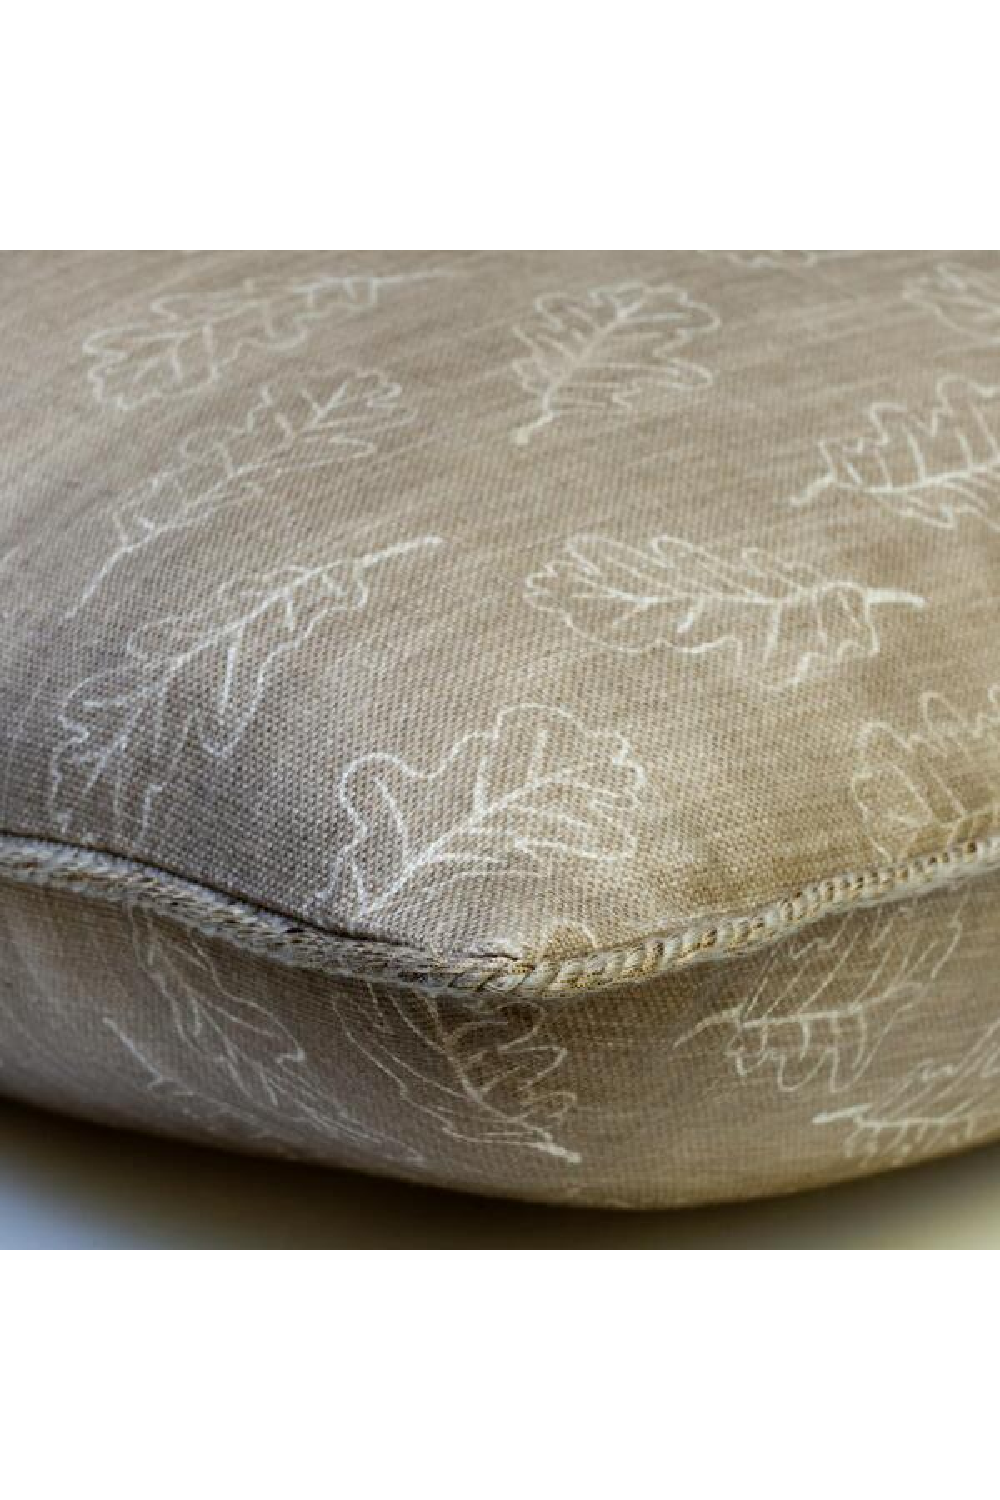 Leaf Design Cushion | Andrew Martin Noble Oak | Oroa.com